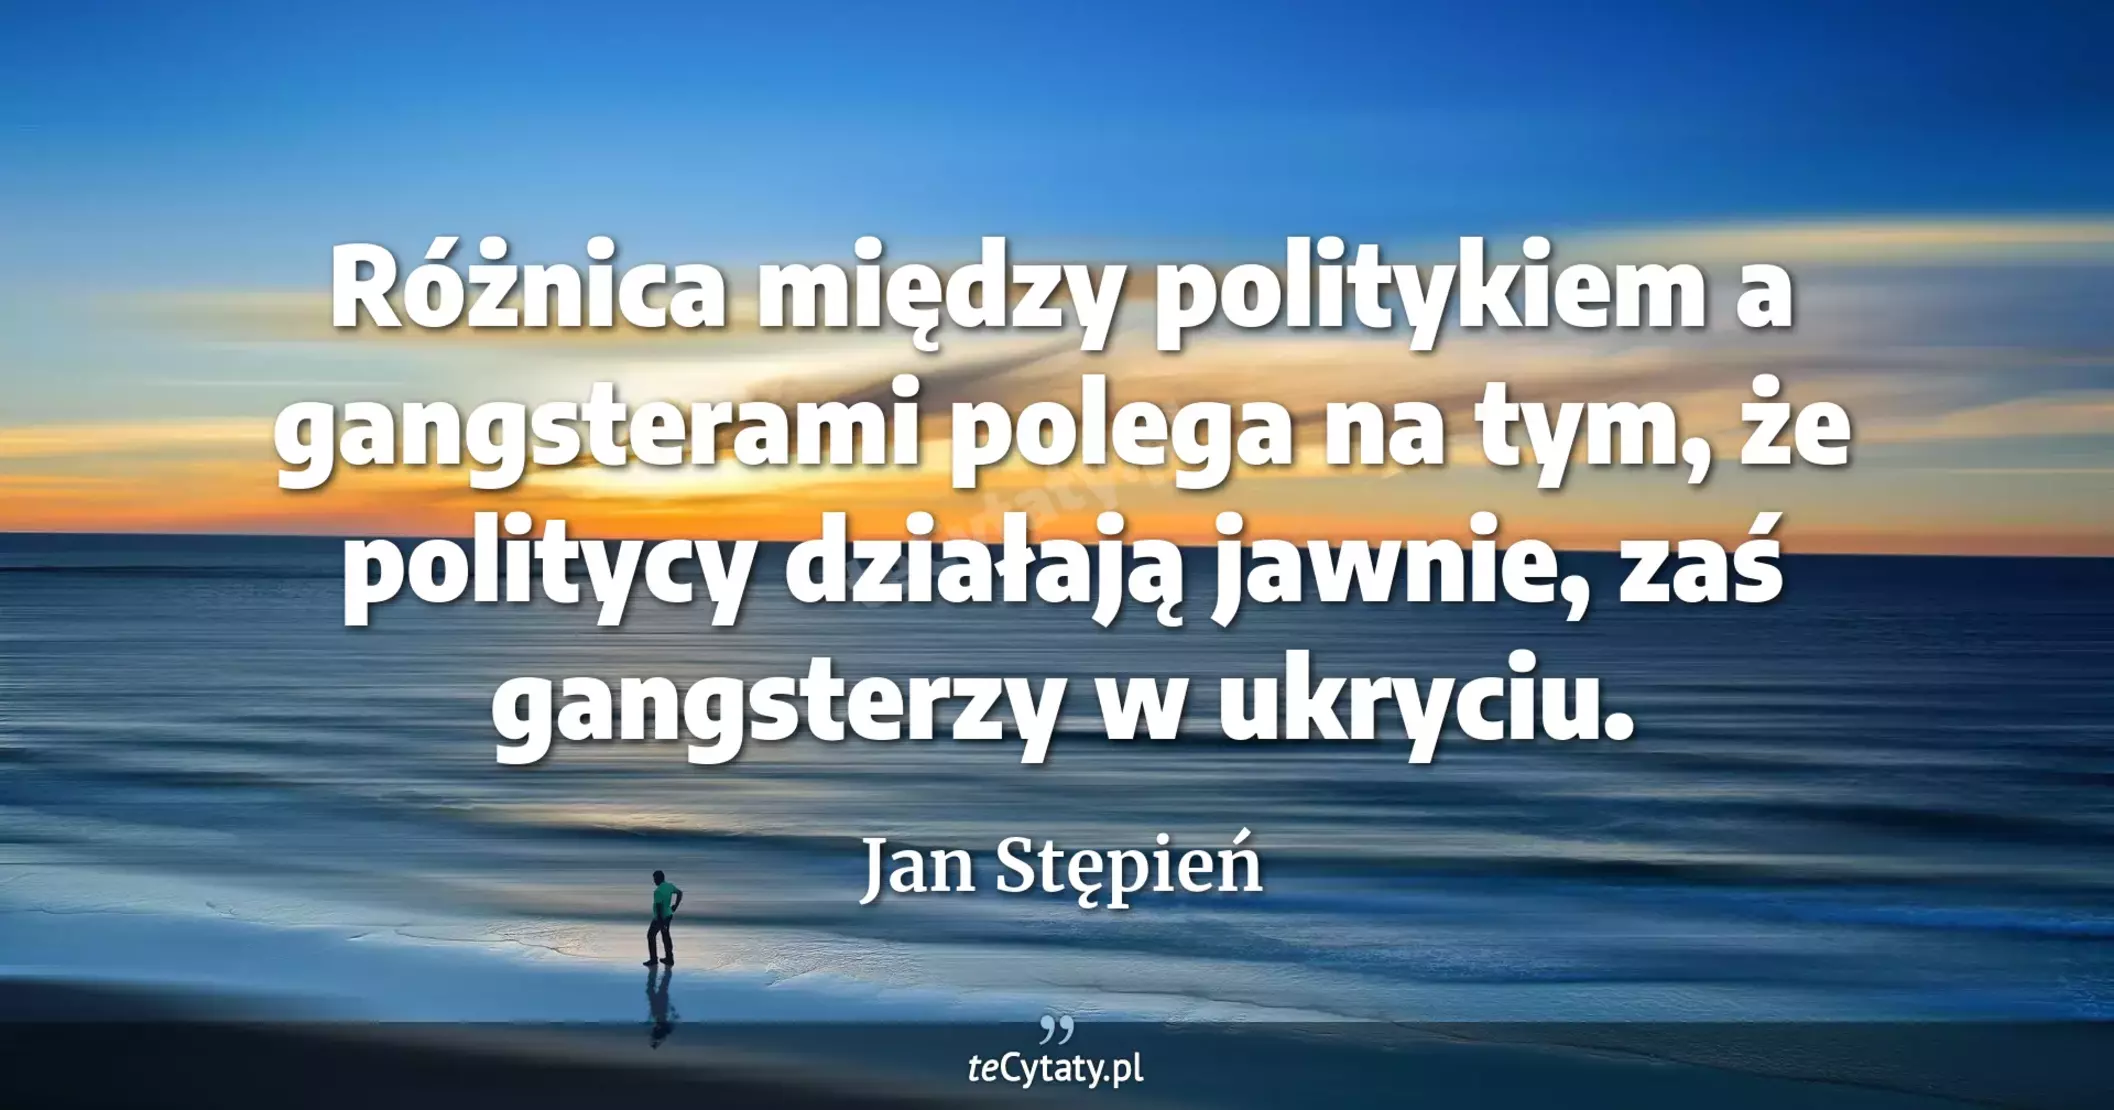 Różnica między politykiem a gangsterami polega na tym, że politycy działają jawnie, zaś gangsterzy w ukryciu. - Jan Stępień